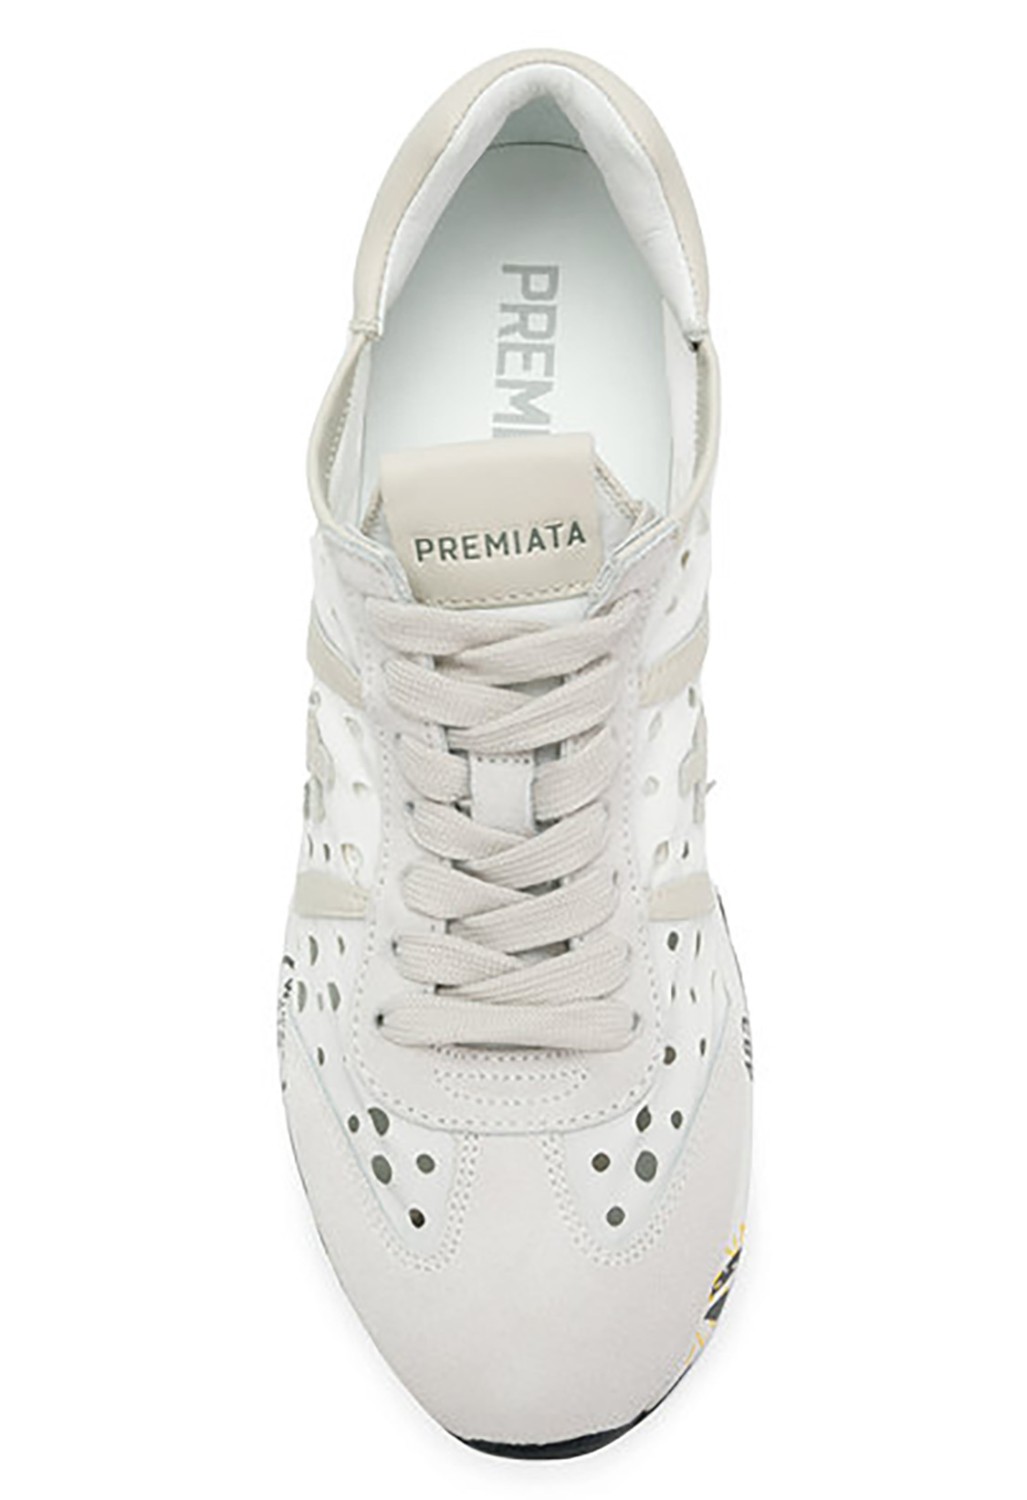 shop Premiata White Sales Scarpe: Sneakers Premiata White, modello Lucy D, in nylon traforato e dettagli in pelle, color bianco.

Composizione: 80% nylon, 20% pelle.
Suola: 100% gomma. number 1199